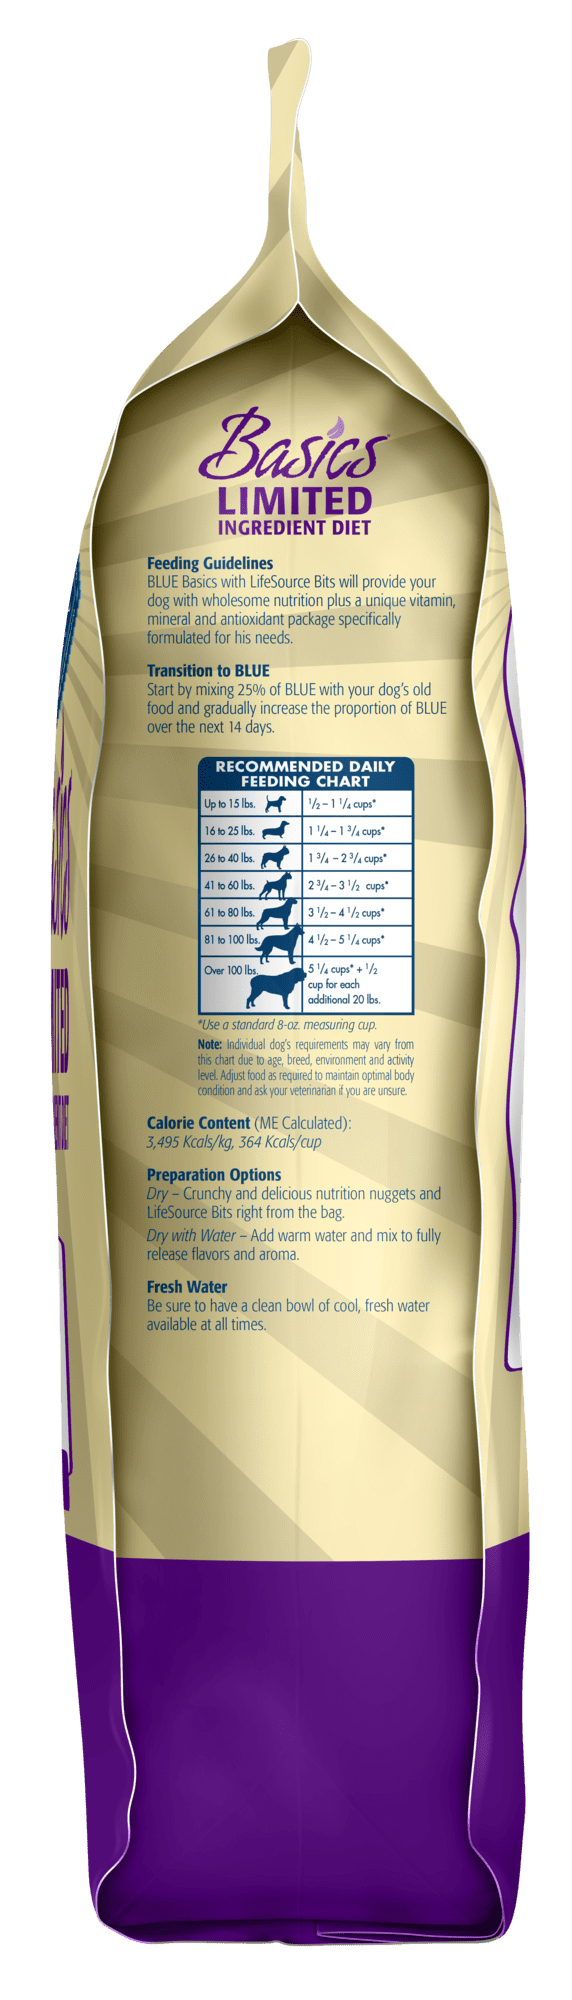 blue buffalo basics limited ingredients turkey & potato dog food